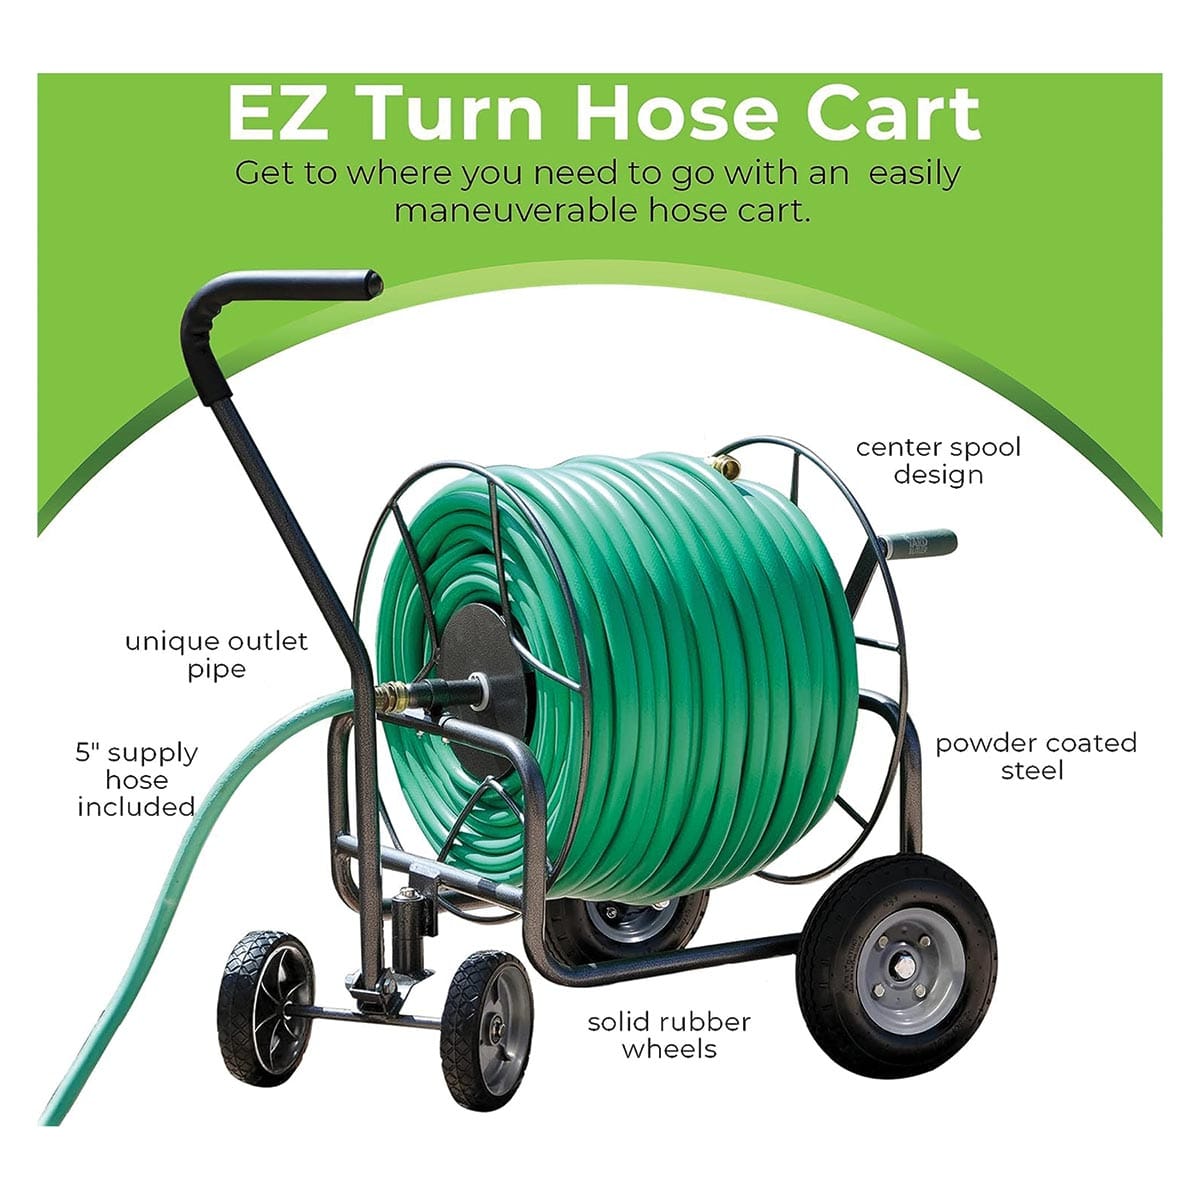 Yard Butler EZ Turn Hose Cart